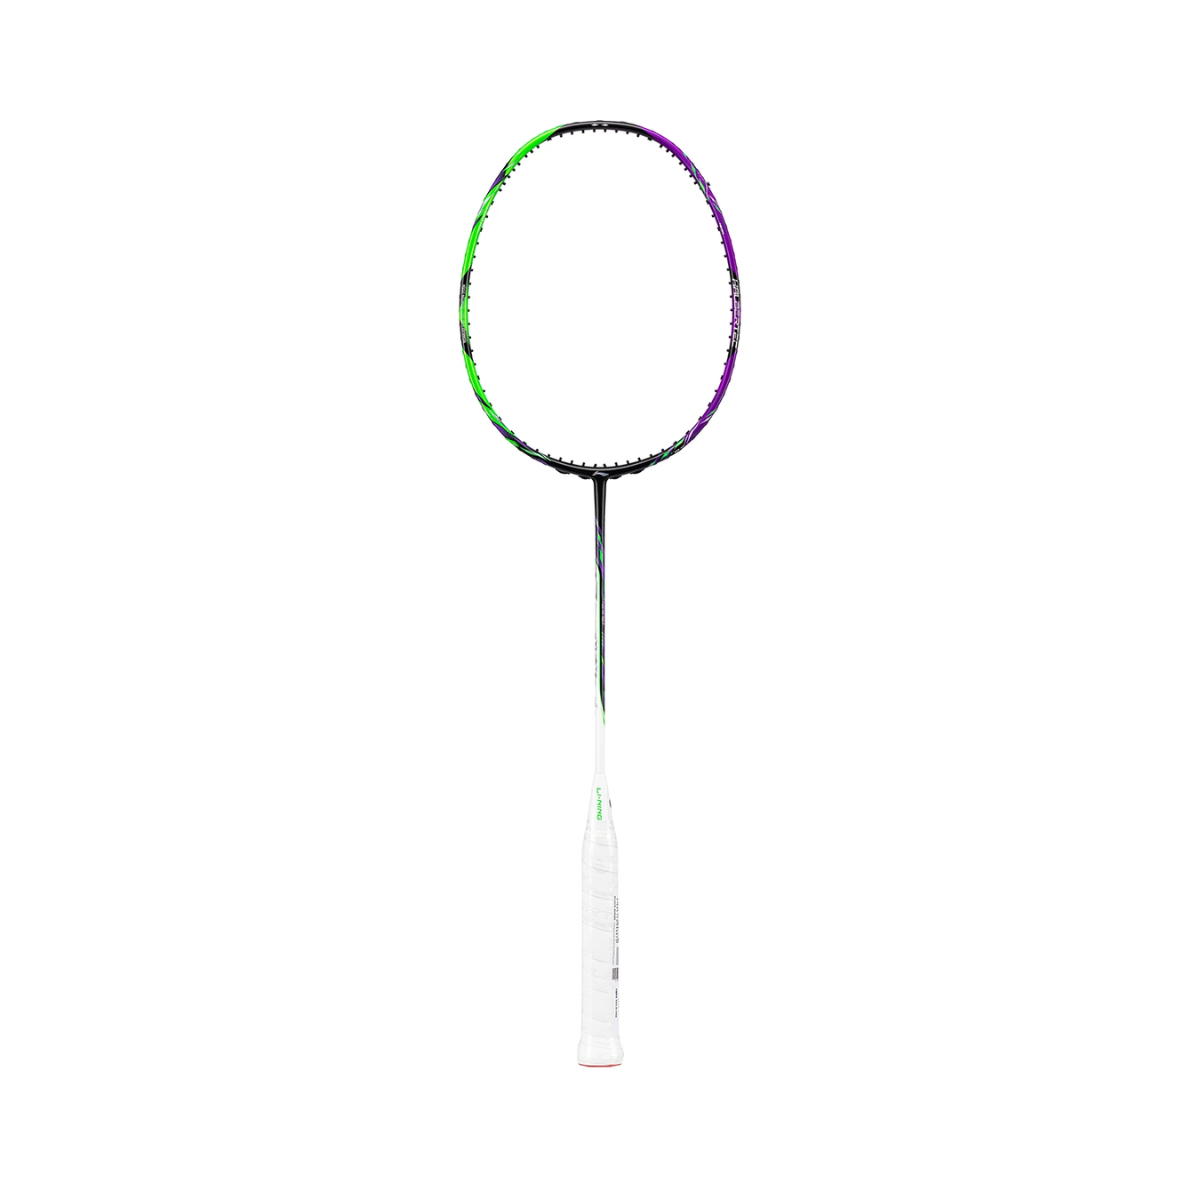 Lining Halbertec 9000 Unstrung Badminton Racket